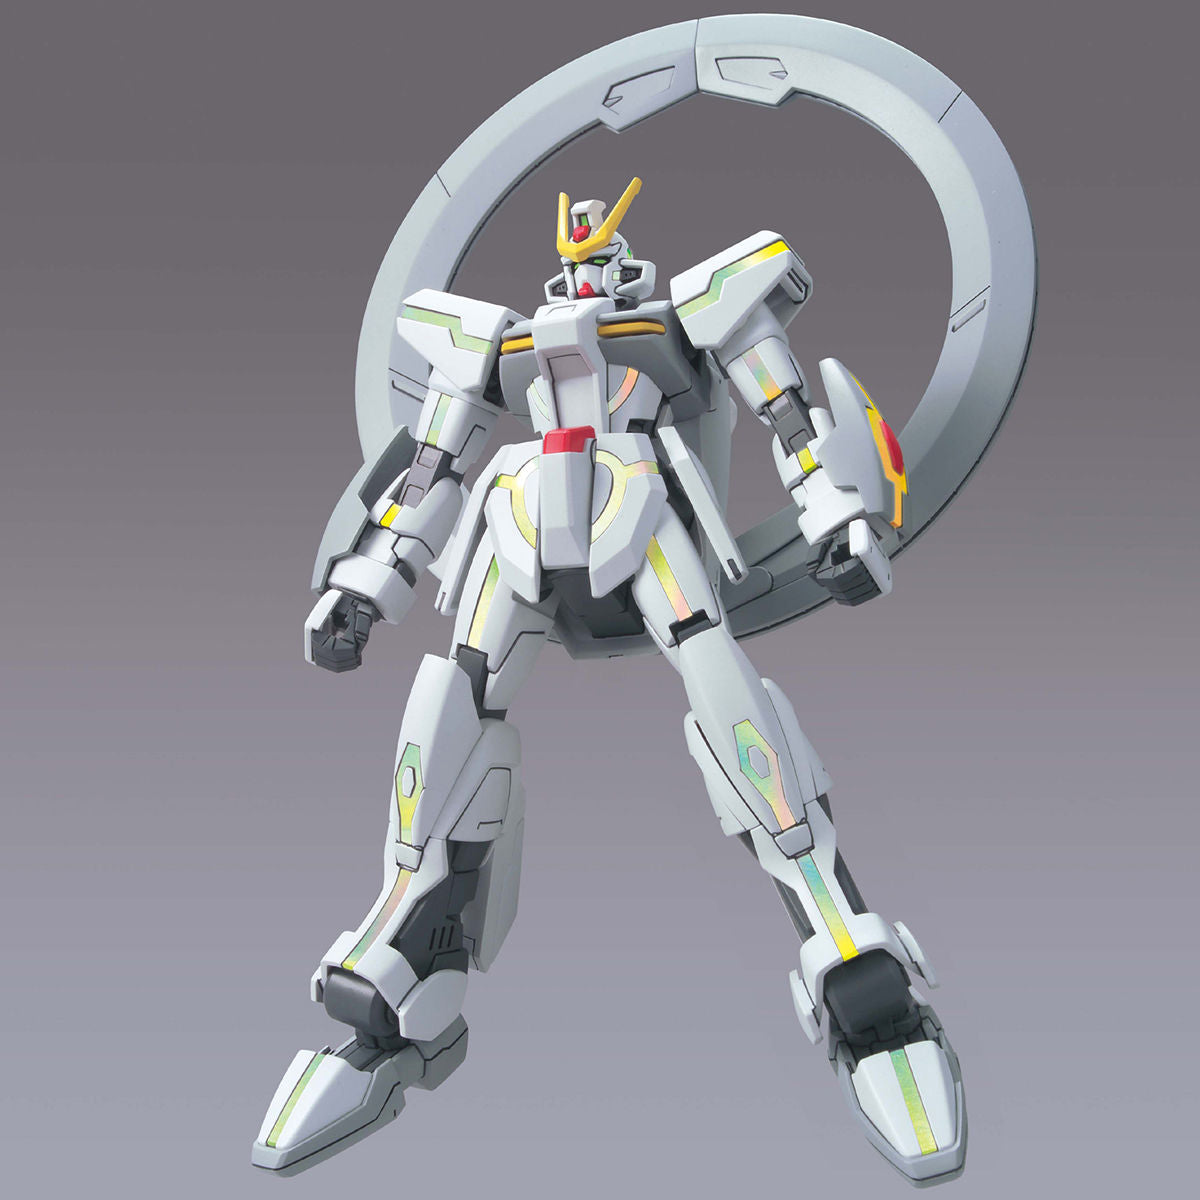 HG Stargazer Gundam 1/144